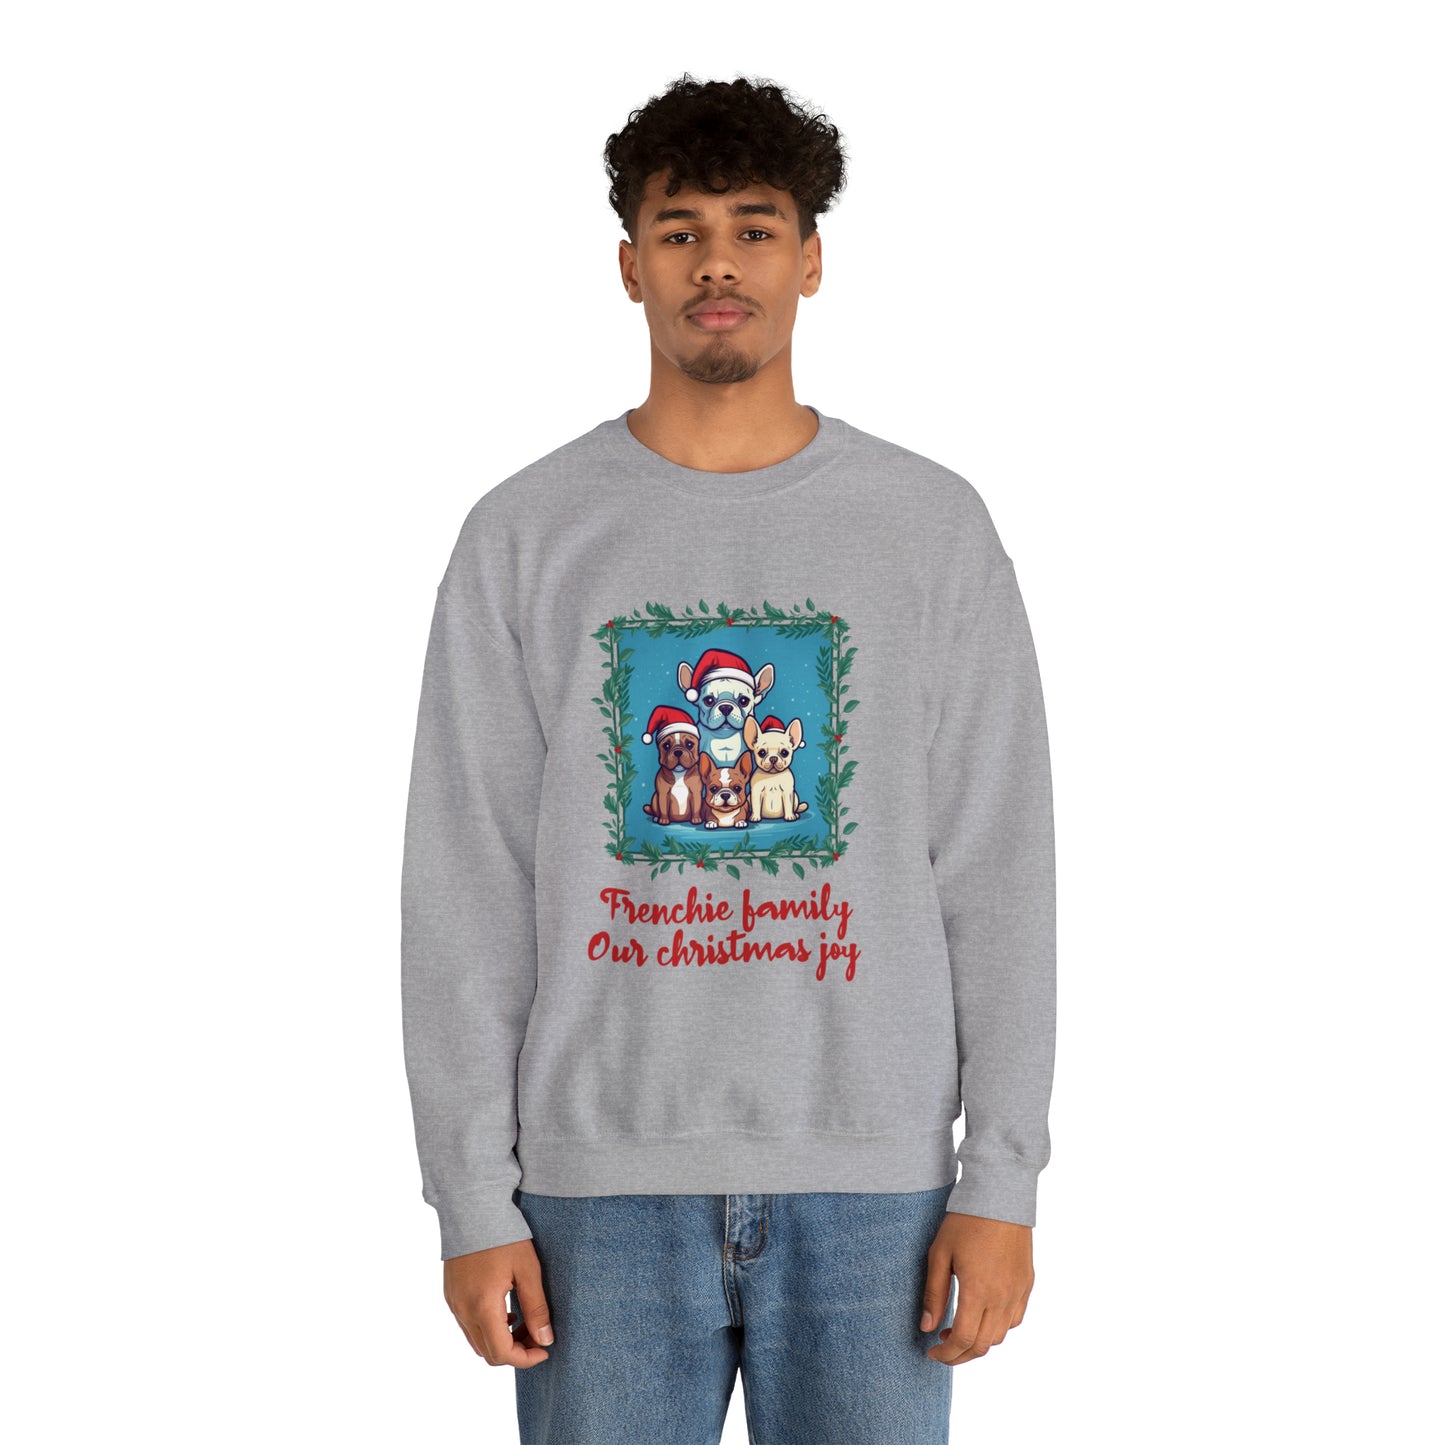 Frenchie Family Sweater -  Unisex Sweatshirt